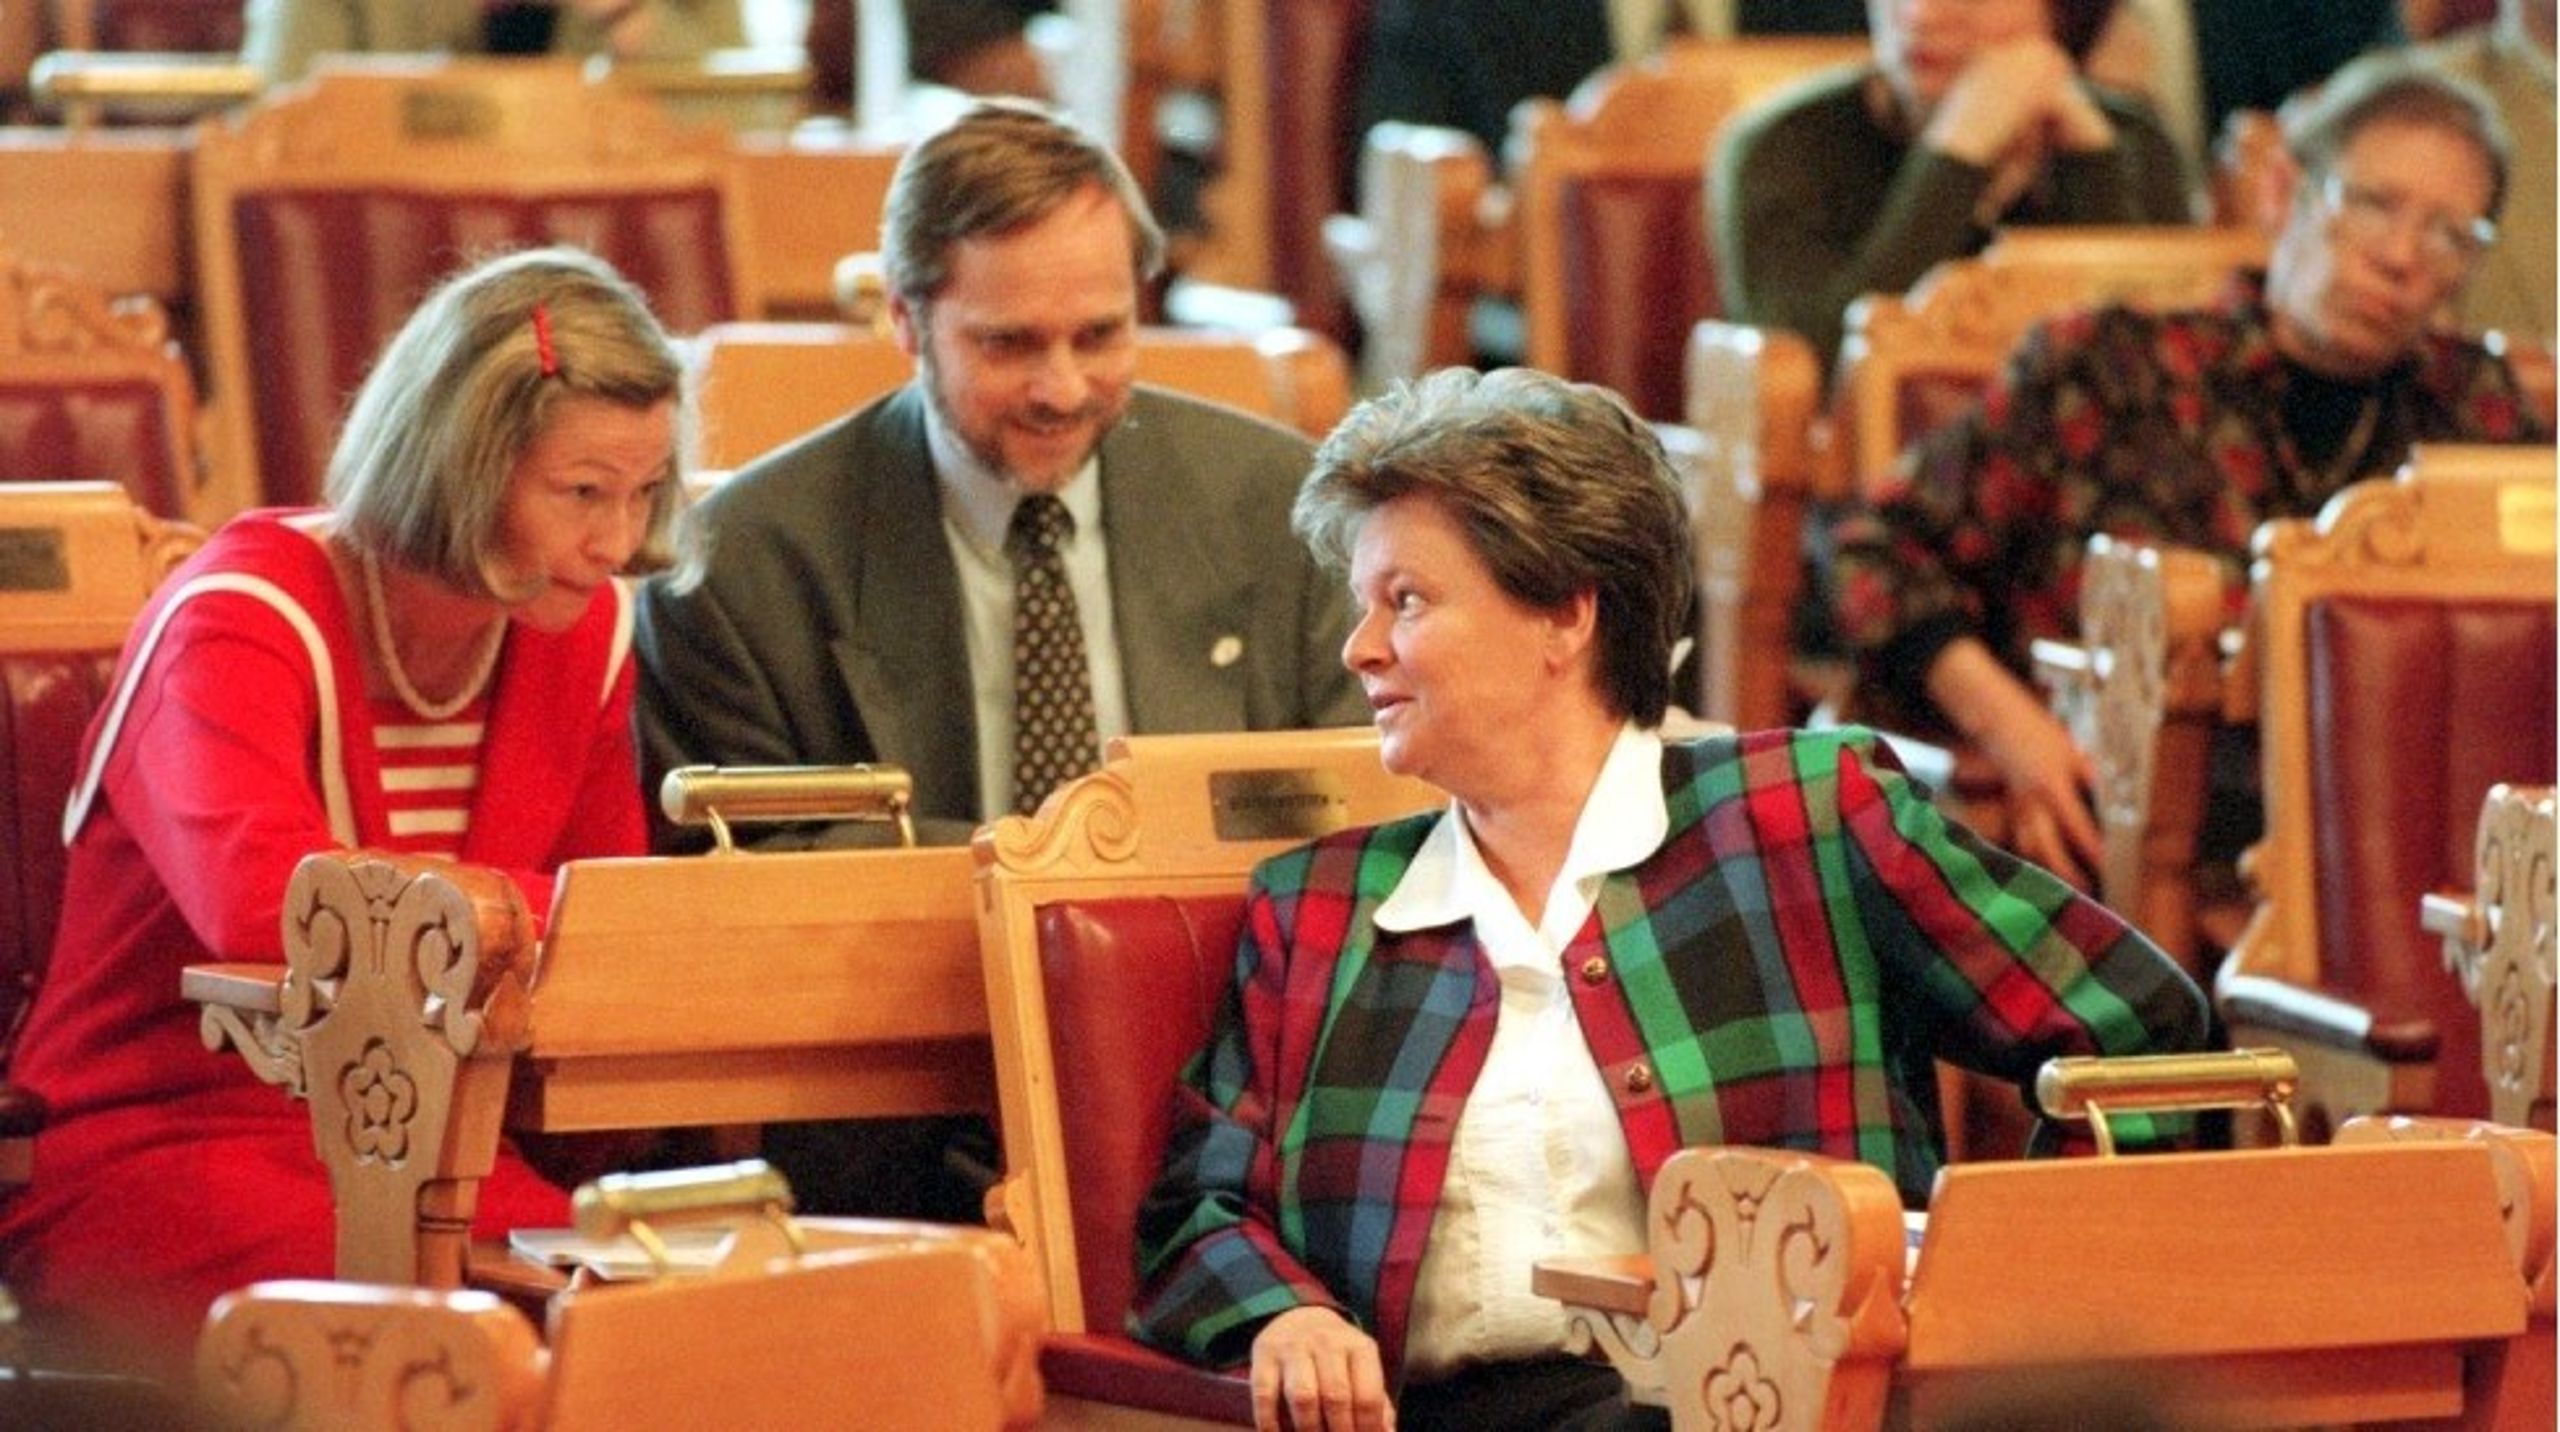 Gro Harlem Brundtland, Kaci Kullmann Five og Jan Petersen i stortingssalen&nbsp;da&nbsp;Norge hadde sin&nbsp;siste EU-debatt for nesten&nbsp;30 år siden.&nbsp;